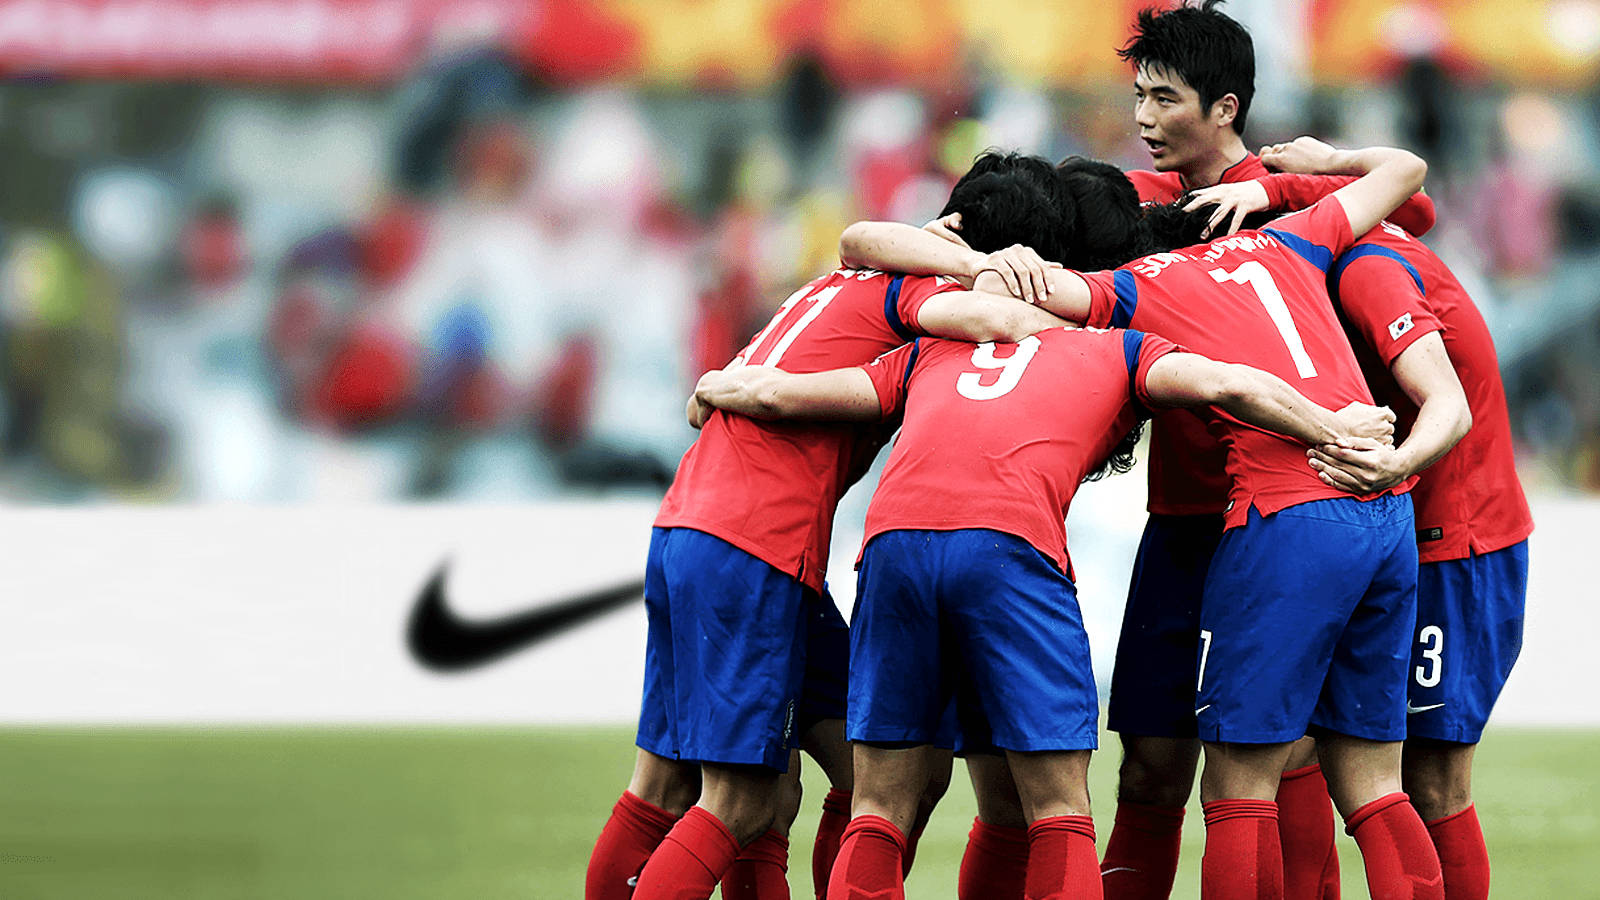 Equipenacional De Futebol Da Coreia Do Sul Principais Jogadores. Papel de Parede